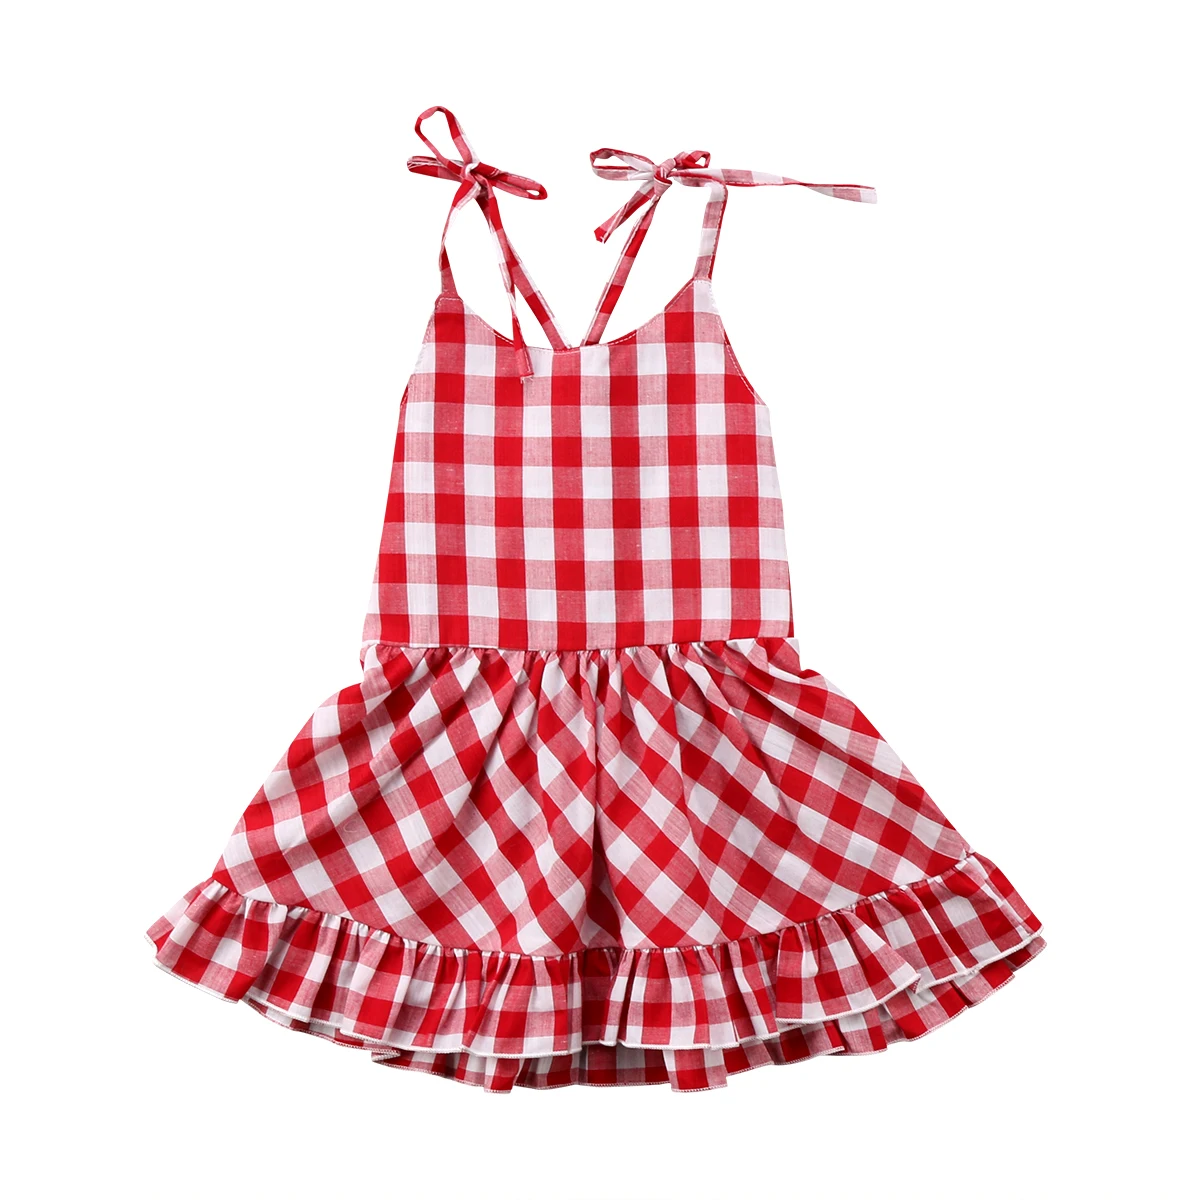 2018 Baby Girl Red Plaid Checked Dress Newborn Sleeveless Summer ...